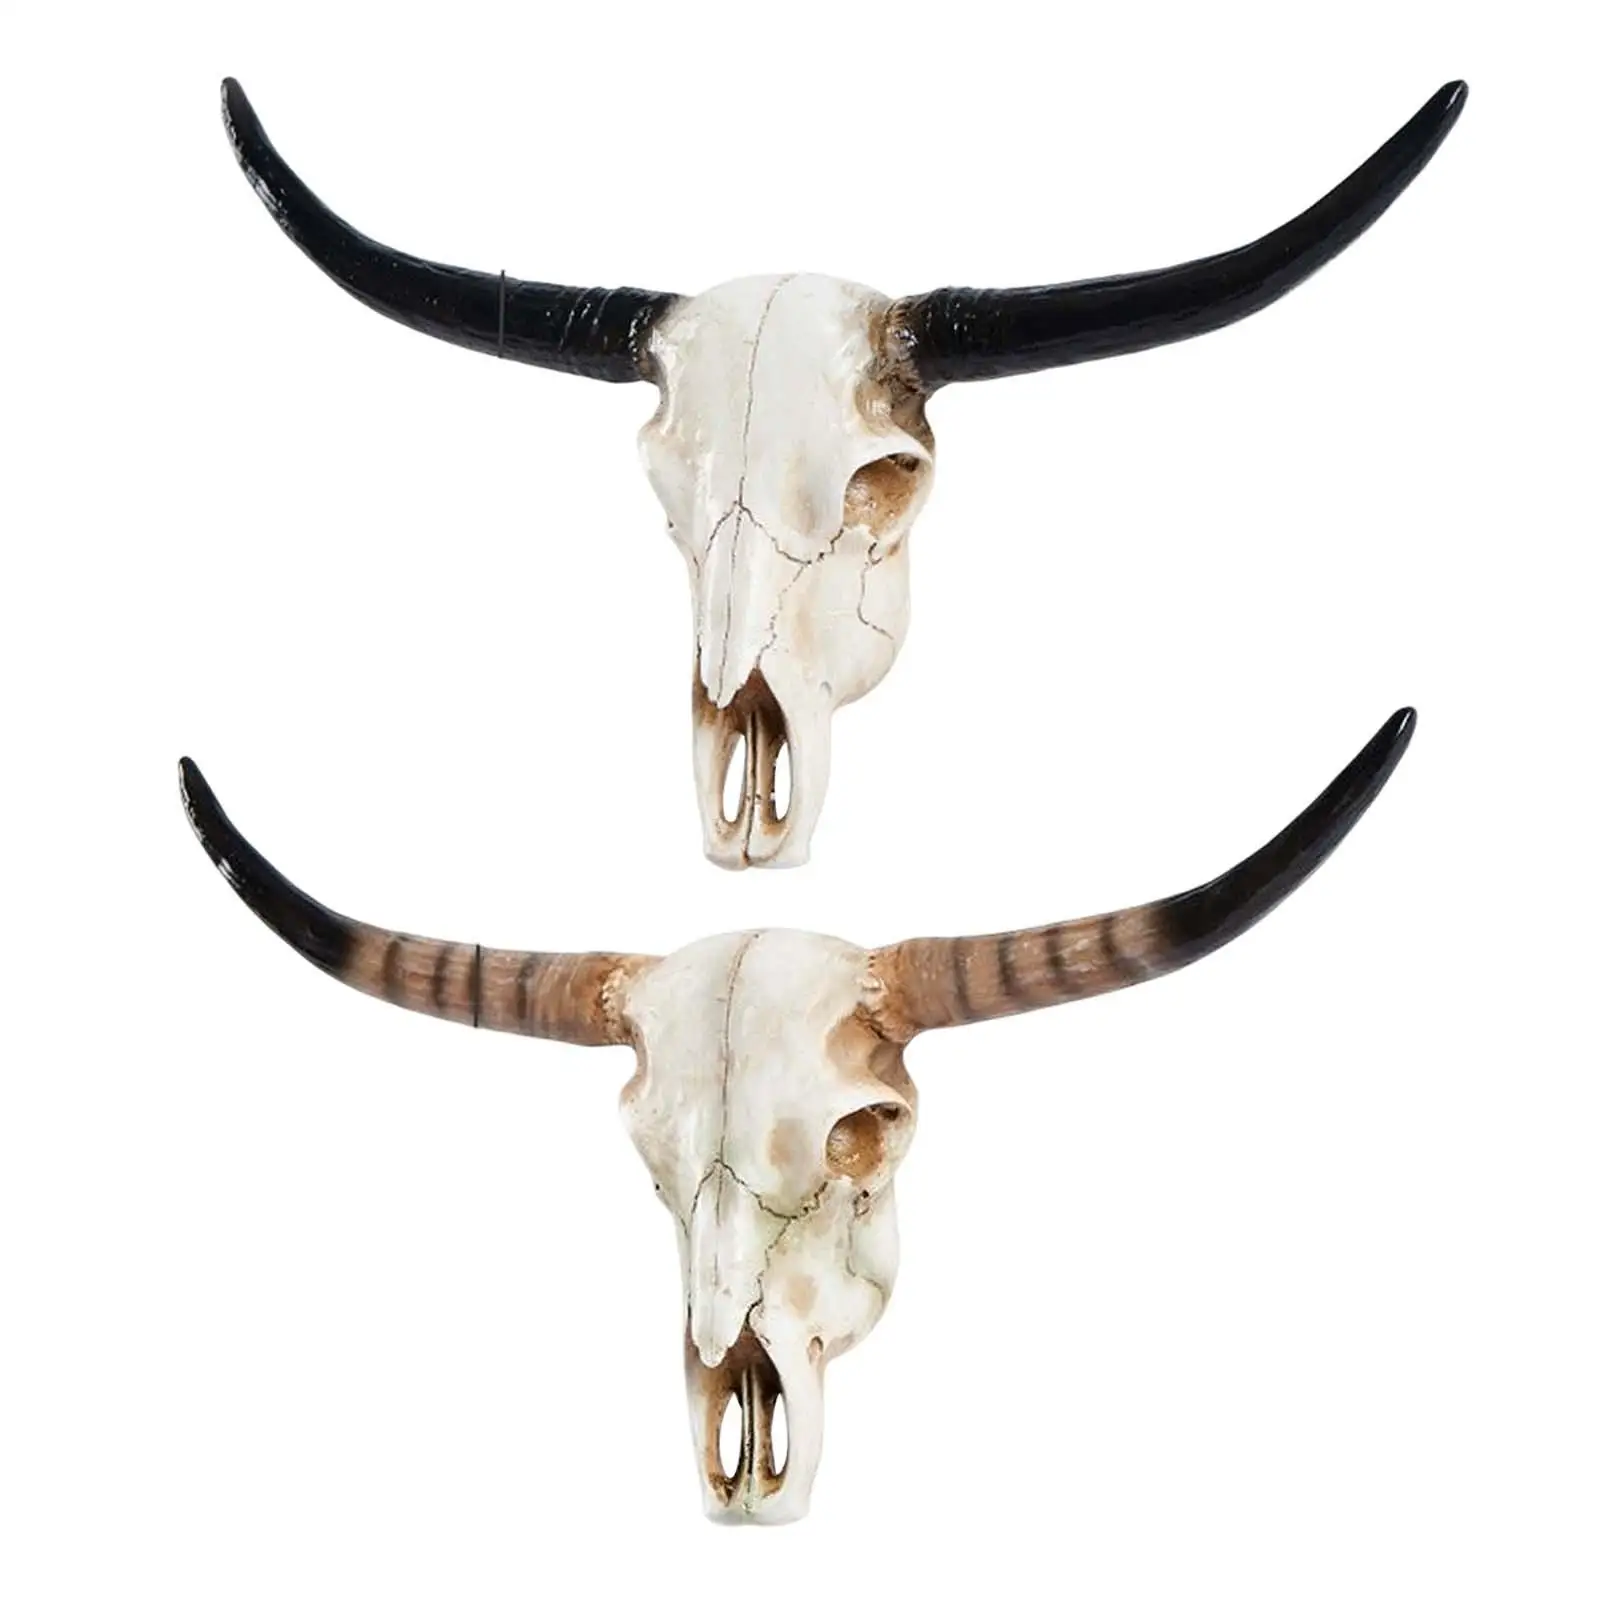 

Резиновые 3D черепа коровы, голова черепа Lonhorn, украшения для стен, фигурки животных, поделки, ретро черепа быка для дома